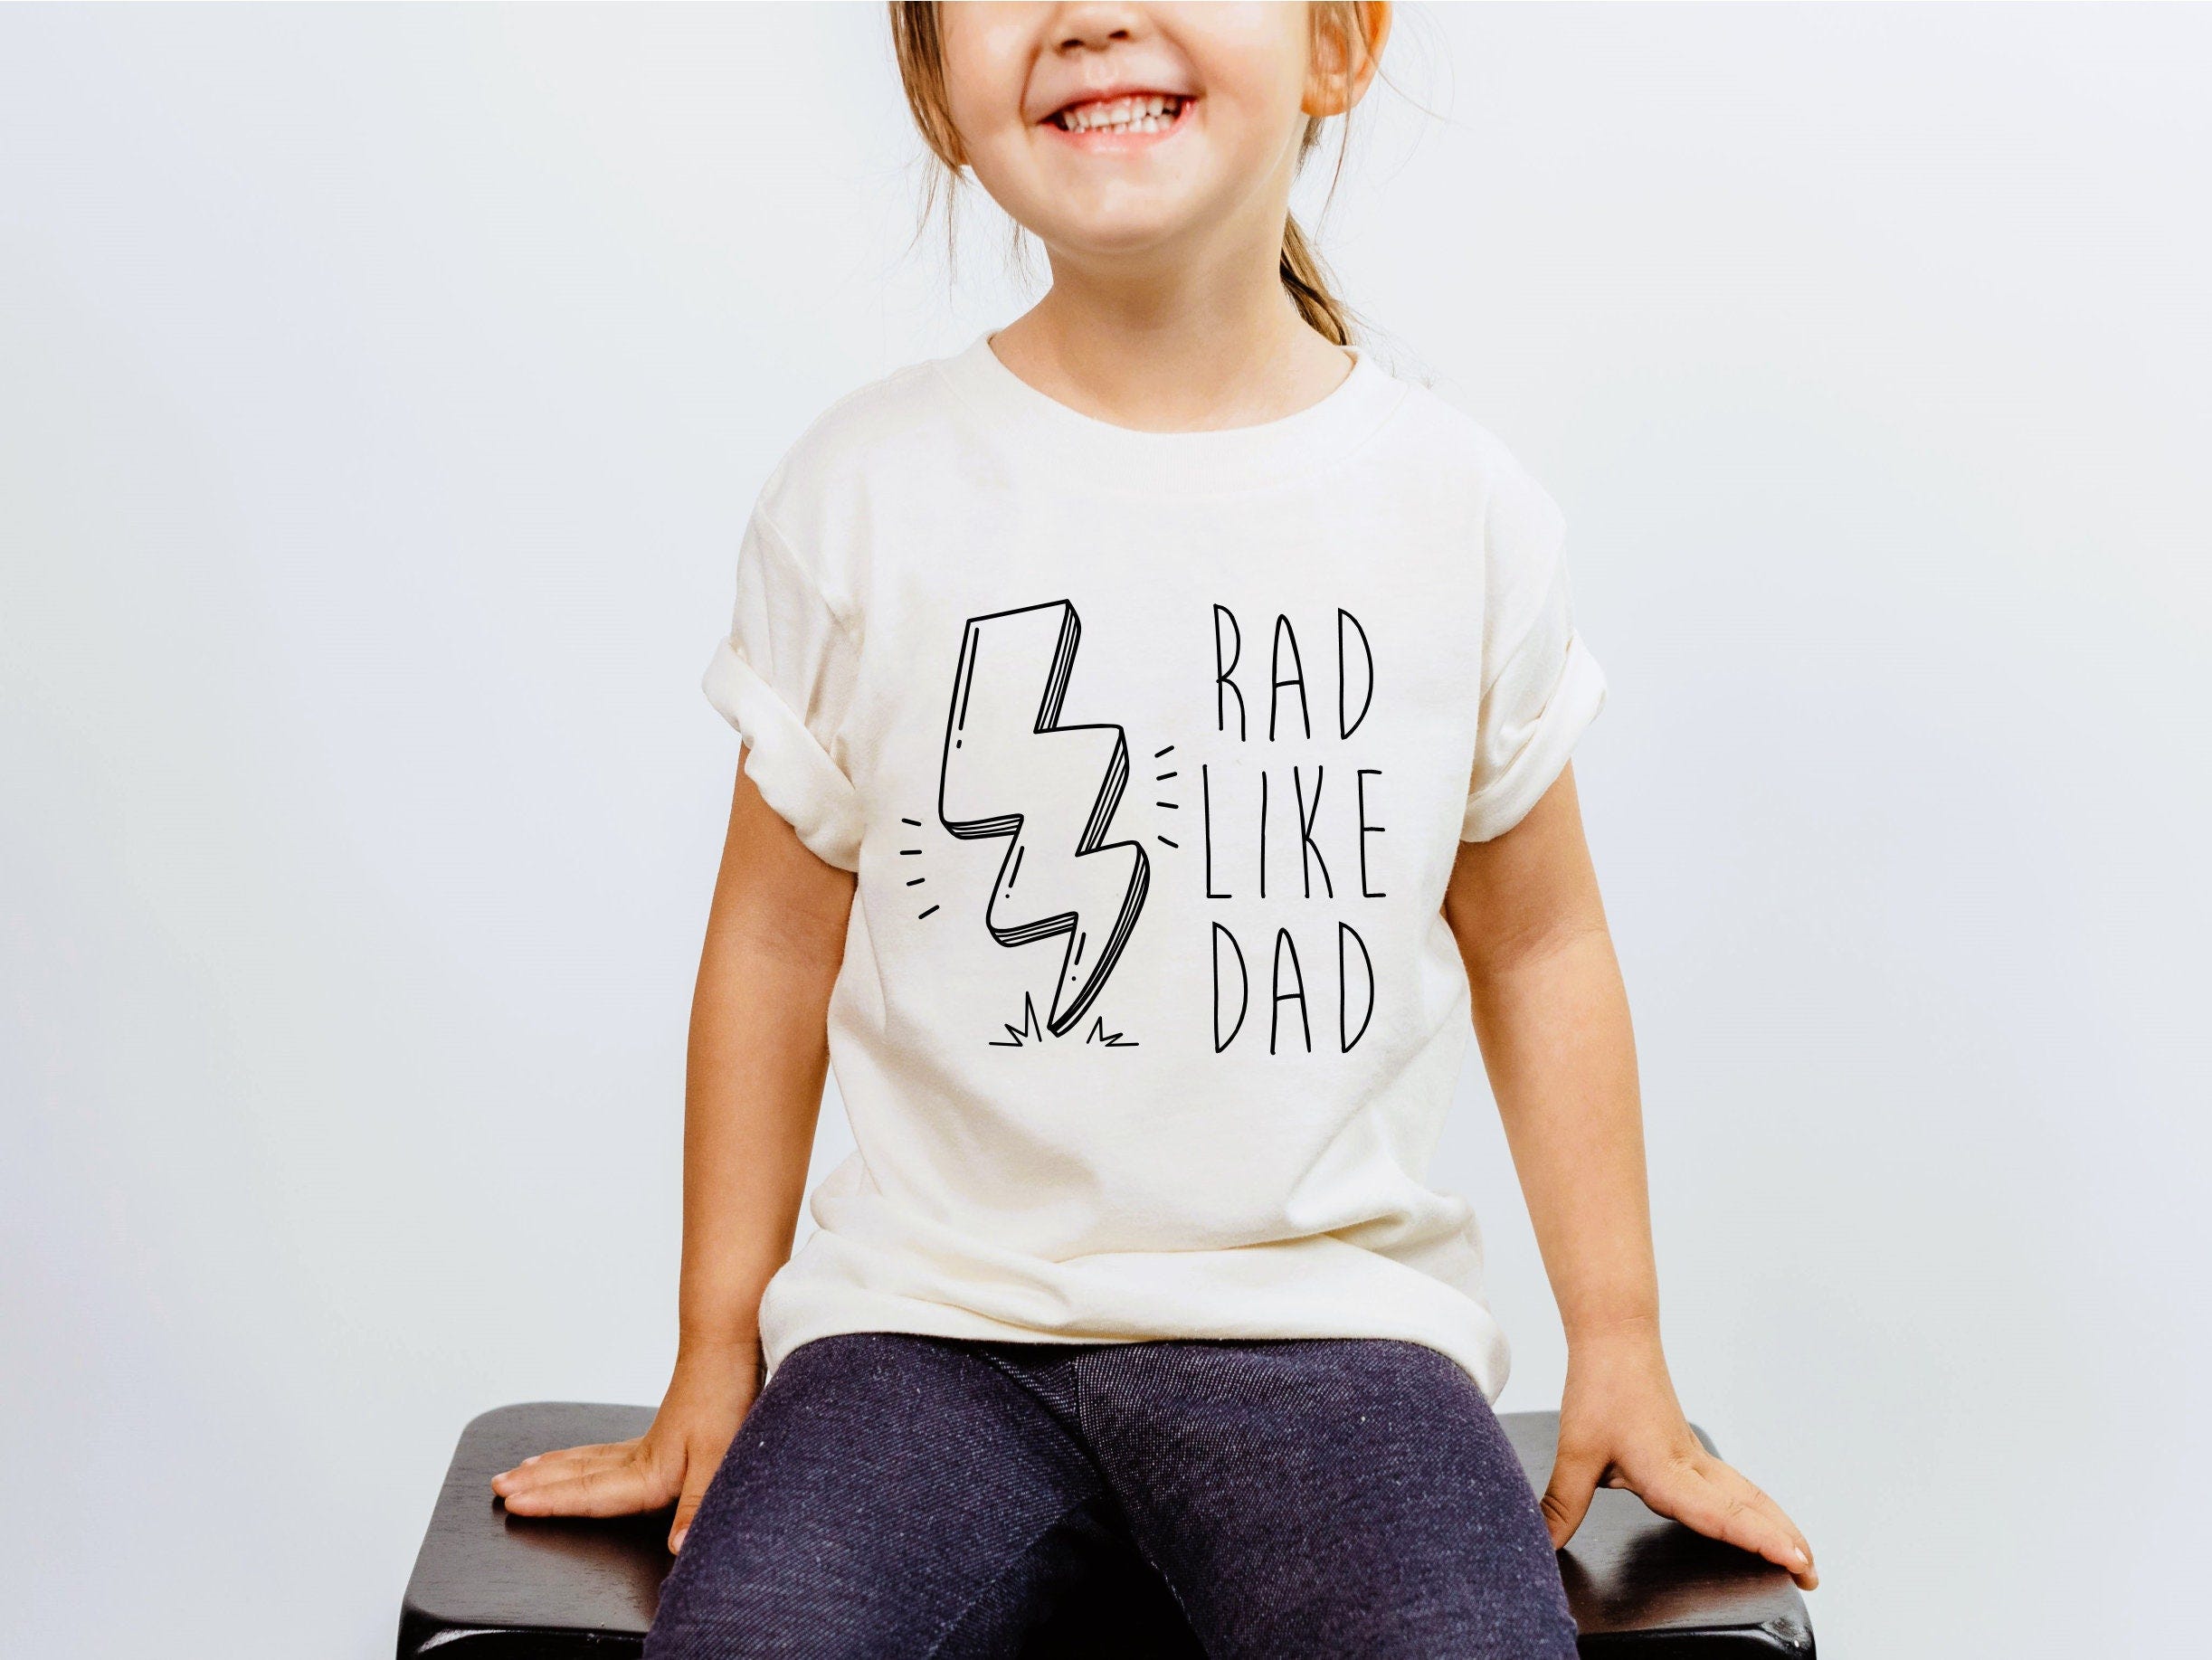 Rad Like Dad Shirt, Rad Like Dad Tee, Boy Tee, Kids shirt, Like Dad Shirt, Rad Tee, Rad Shirt, Just Like Dad Shirt, Rad Tee, Just Like Dad T